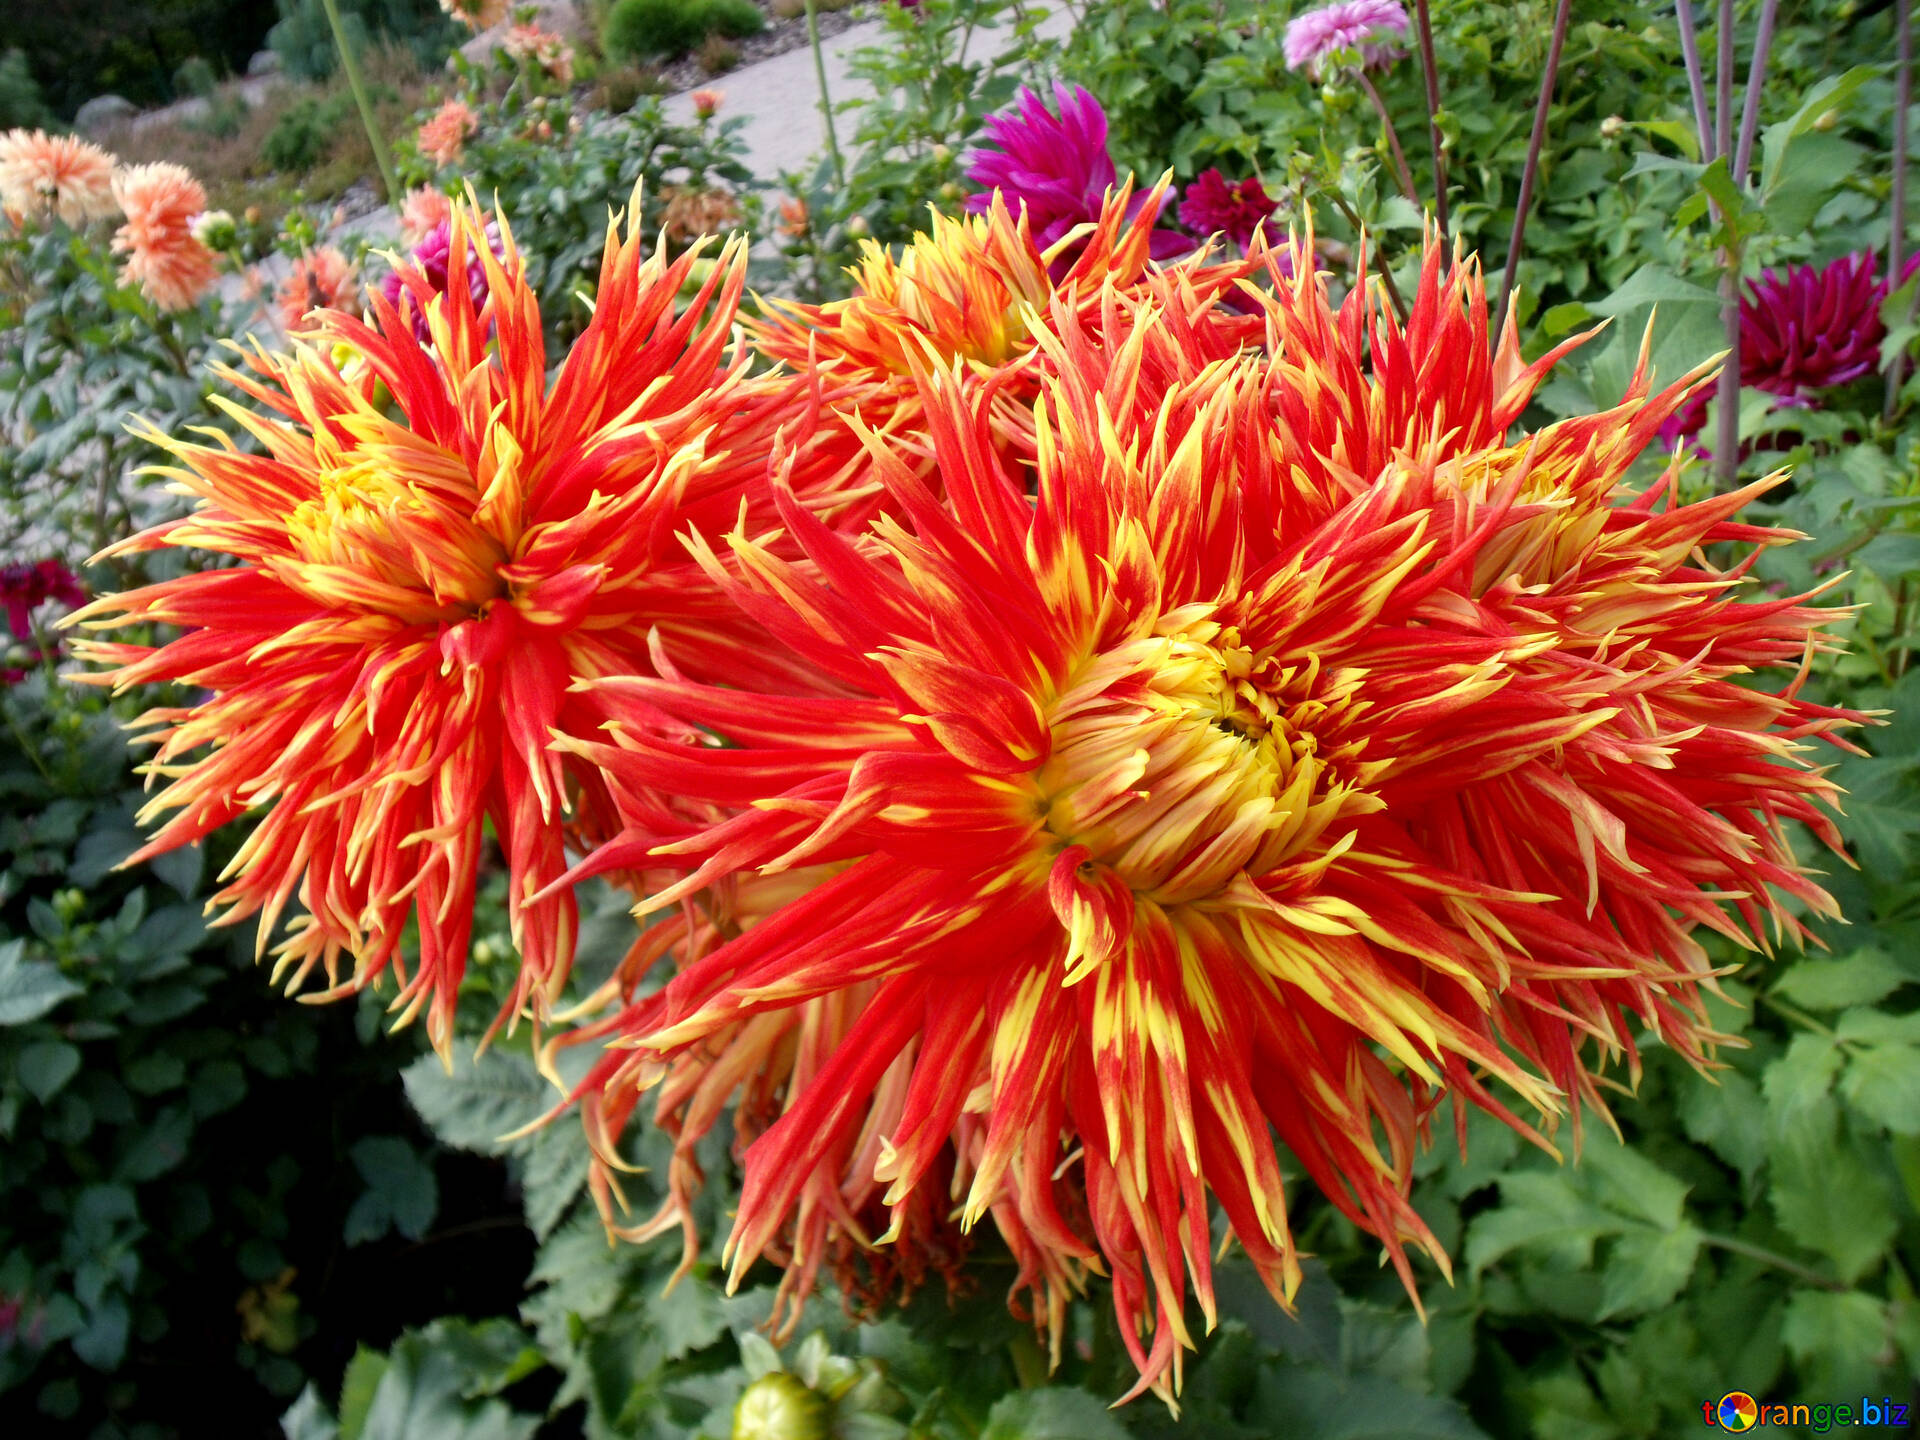 Dálias foto dália flor vermelha e amarela foto outono № 14285 | torange.biz